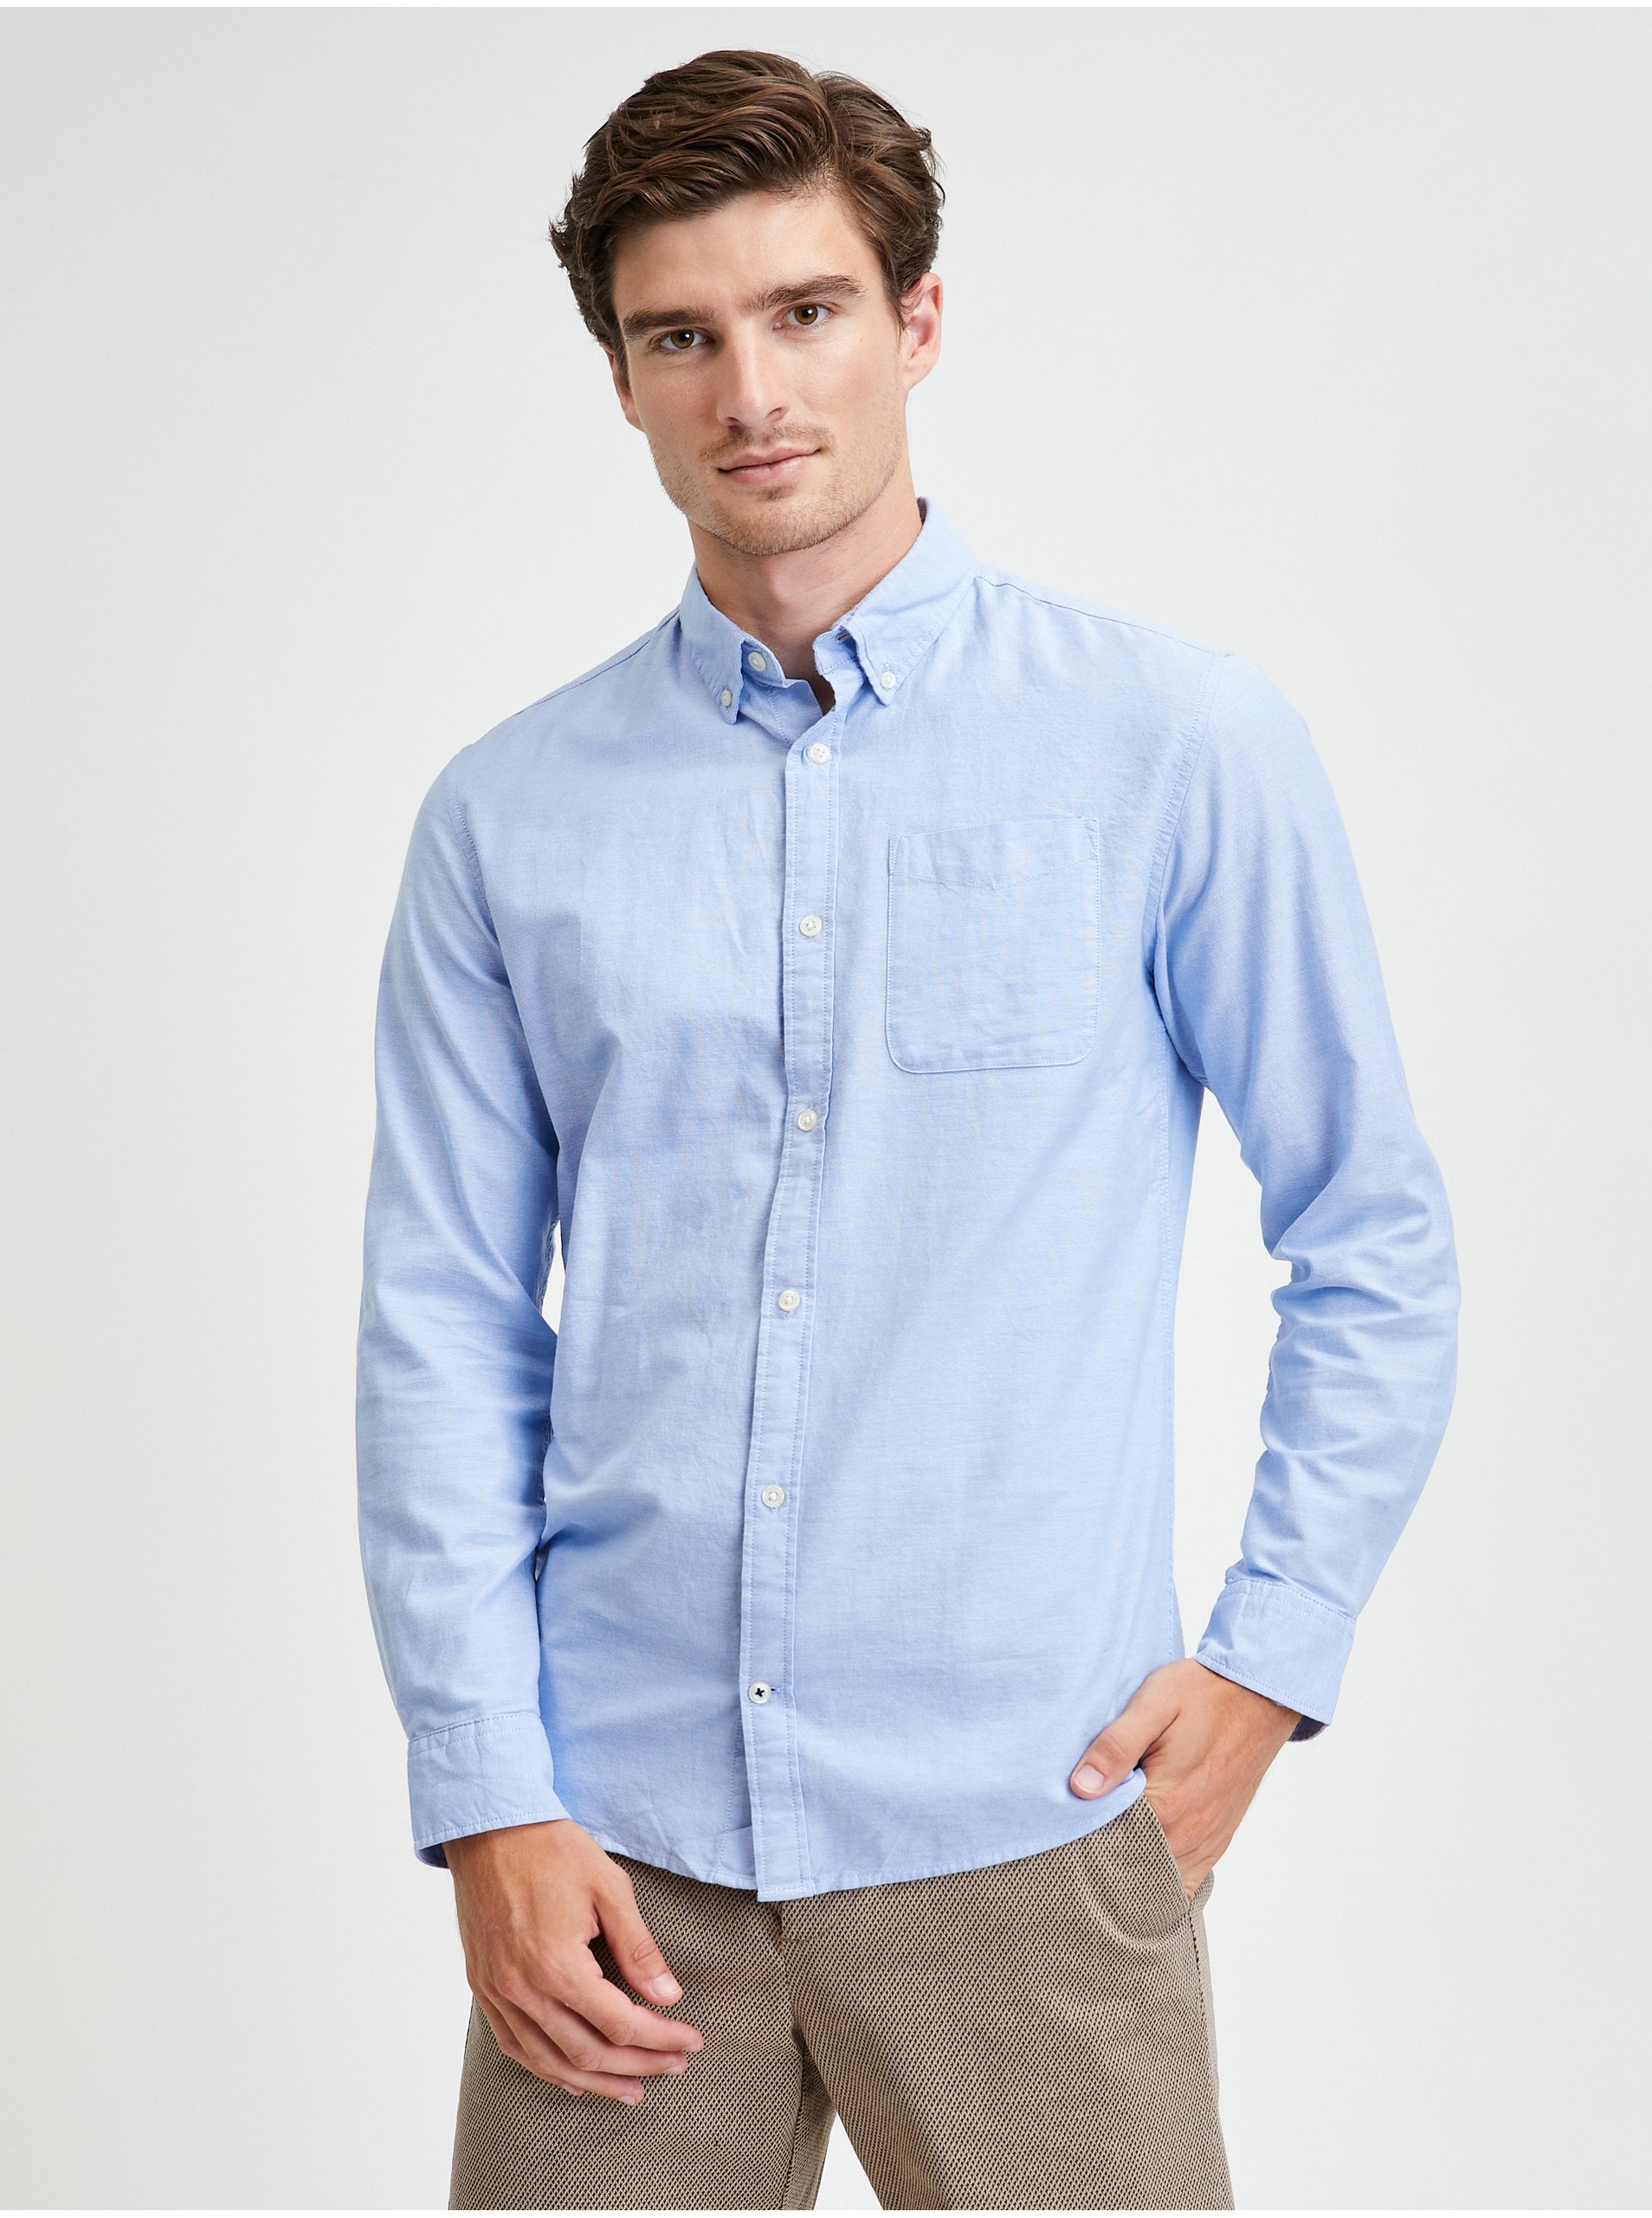 E-shop Modrá košile Jack & Jones Oxford